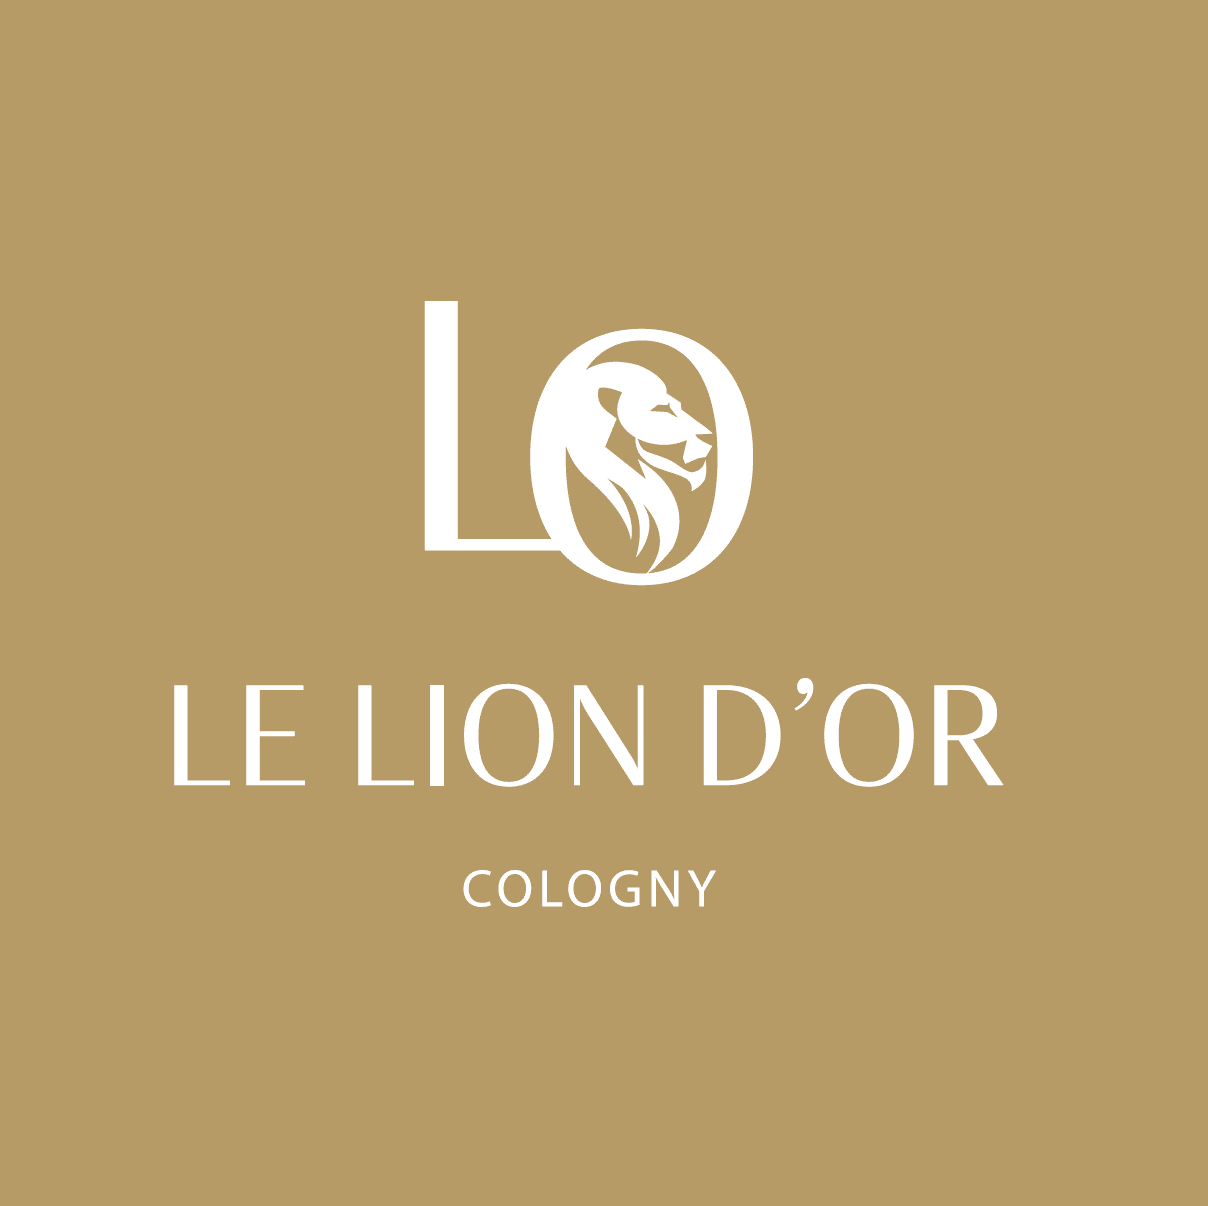 Restaurant du Lion d'Or - Gastronomy & bistronomy in Cologny, Geneva